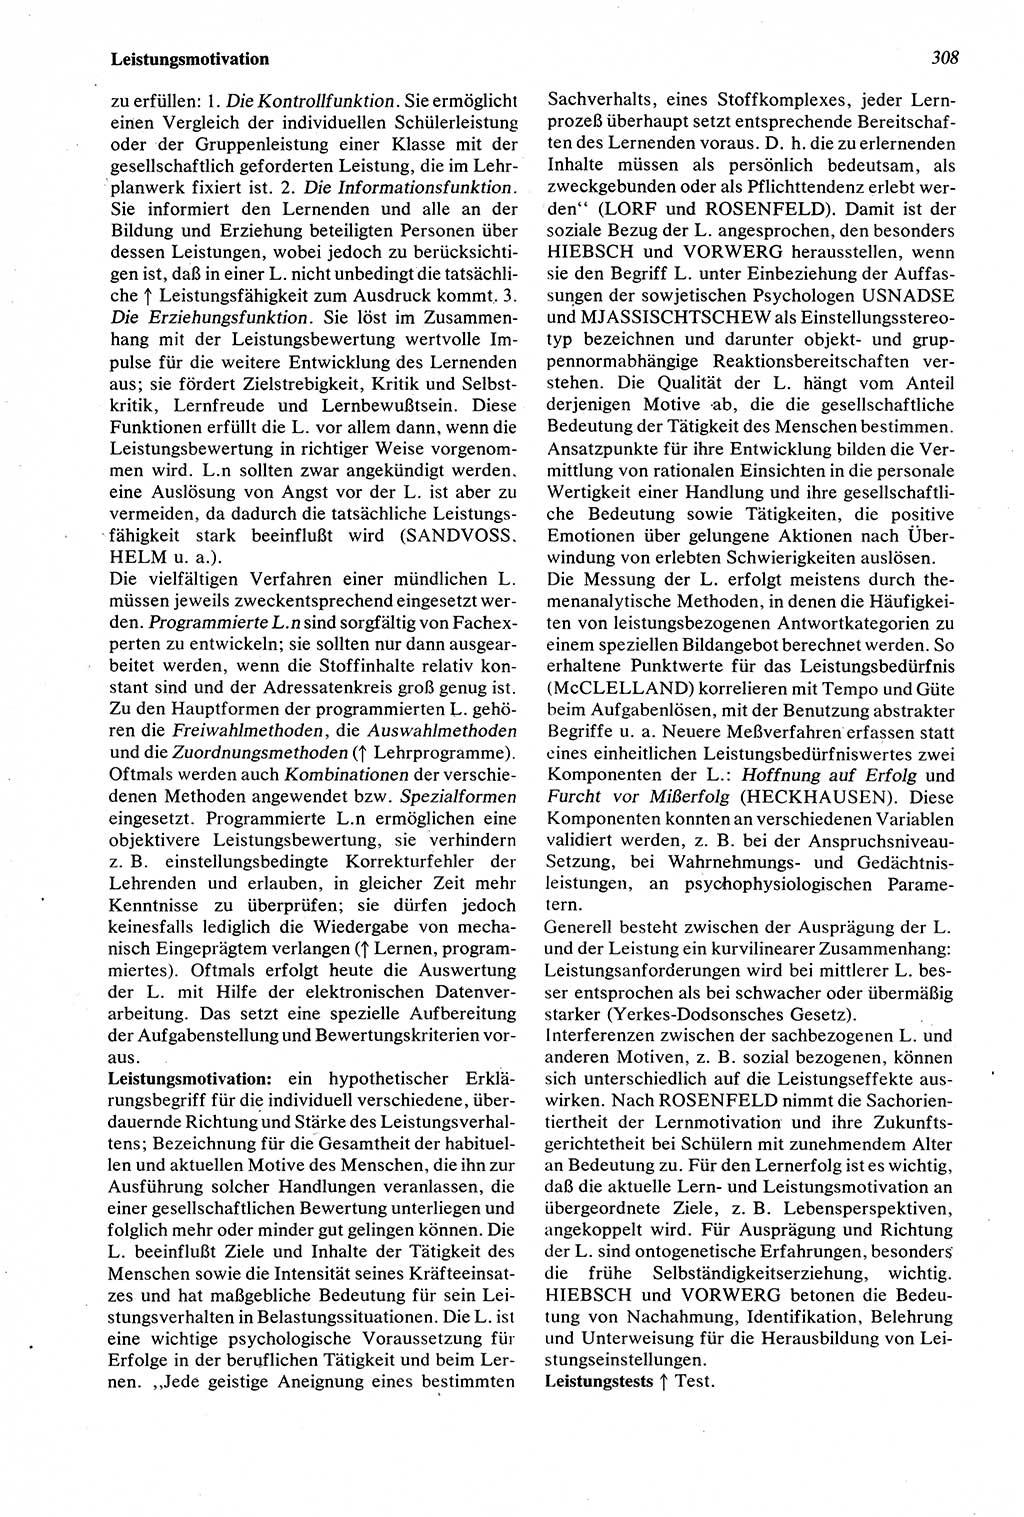 Wörterbuch der Psychologie [Deutsche Demokratische Republik (DDR)] 1976, Seite 308 (Wb. Psych. DDR 1976, S. 308)